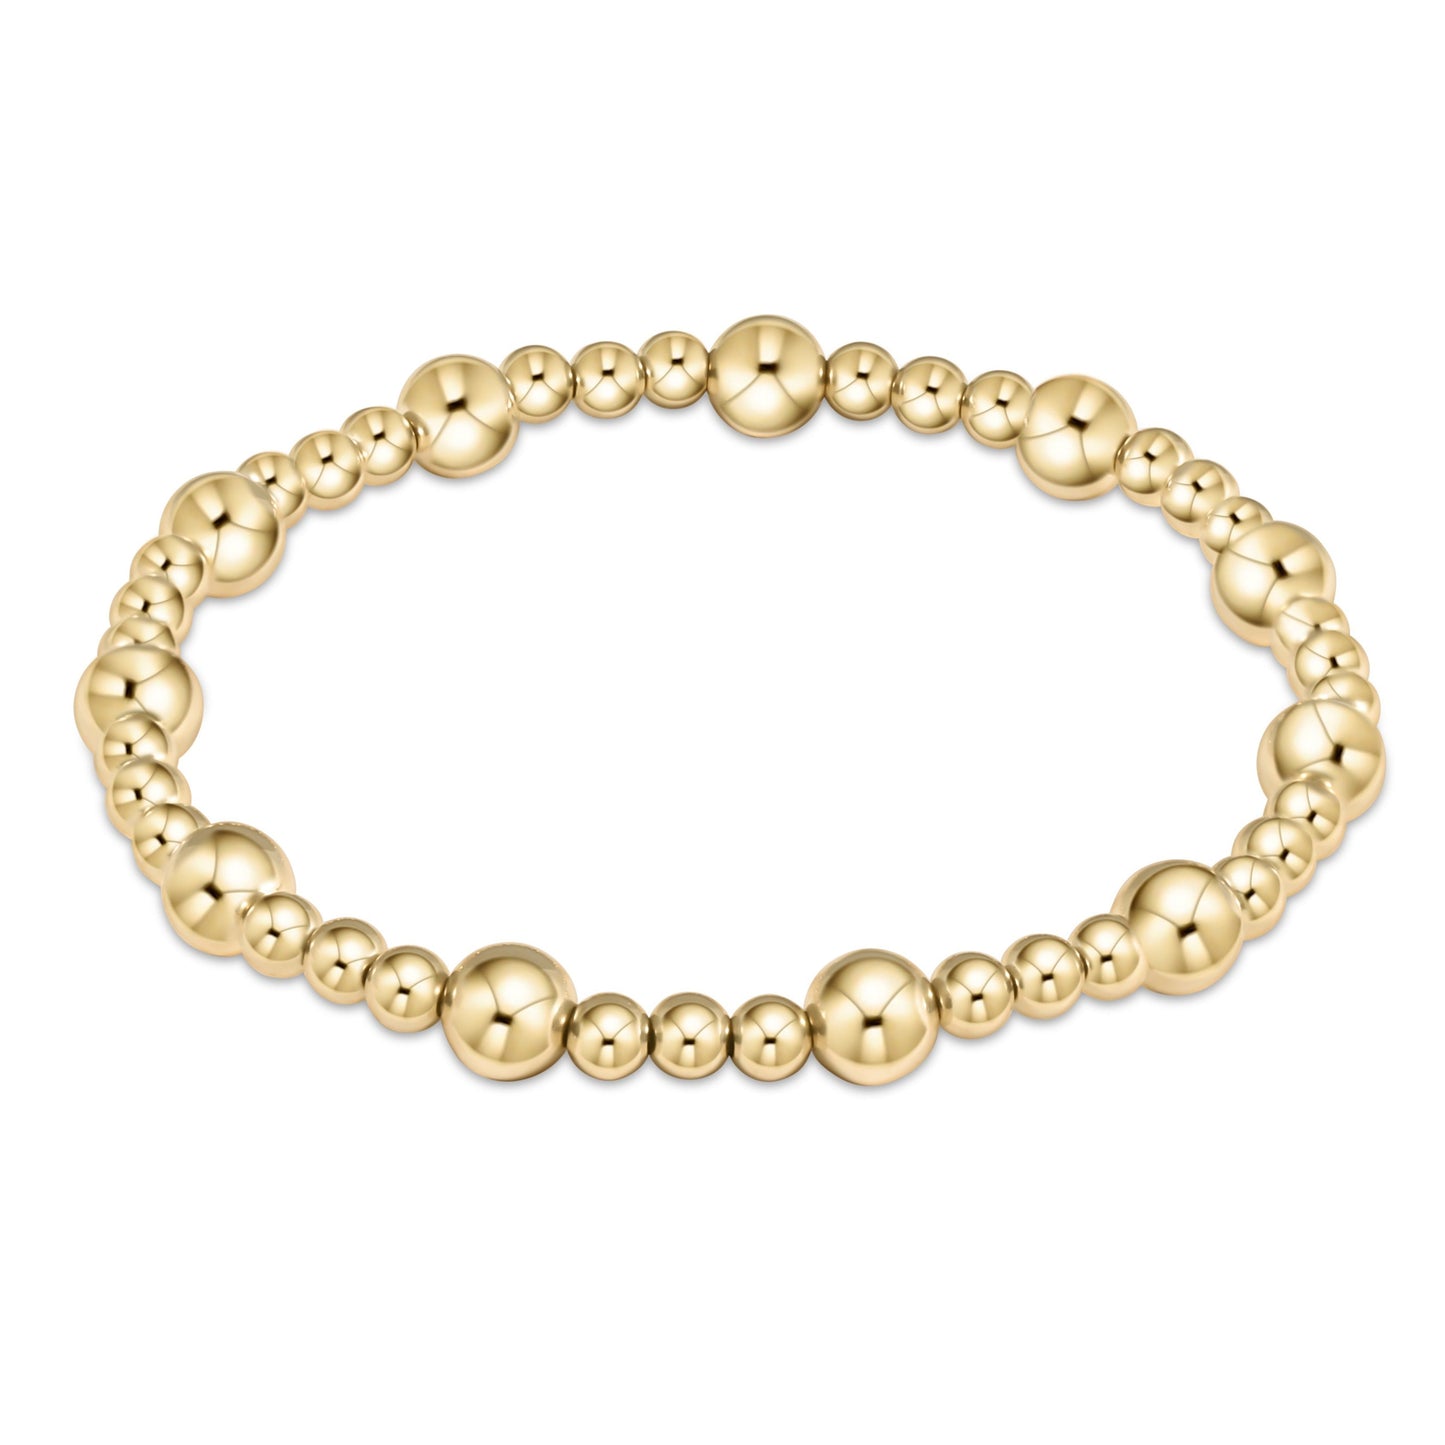 ENewton Classic Gold Bracelet Collection